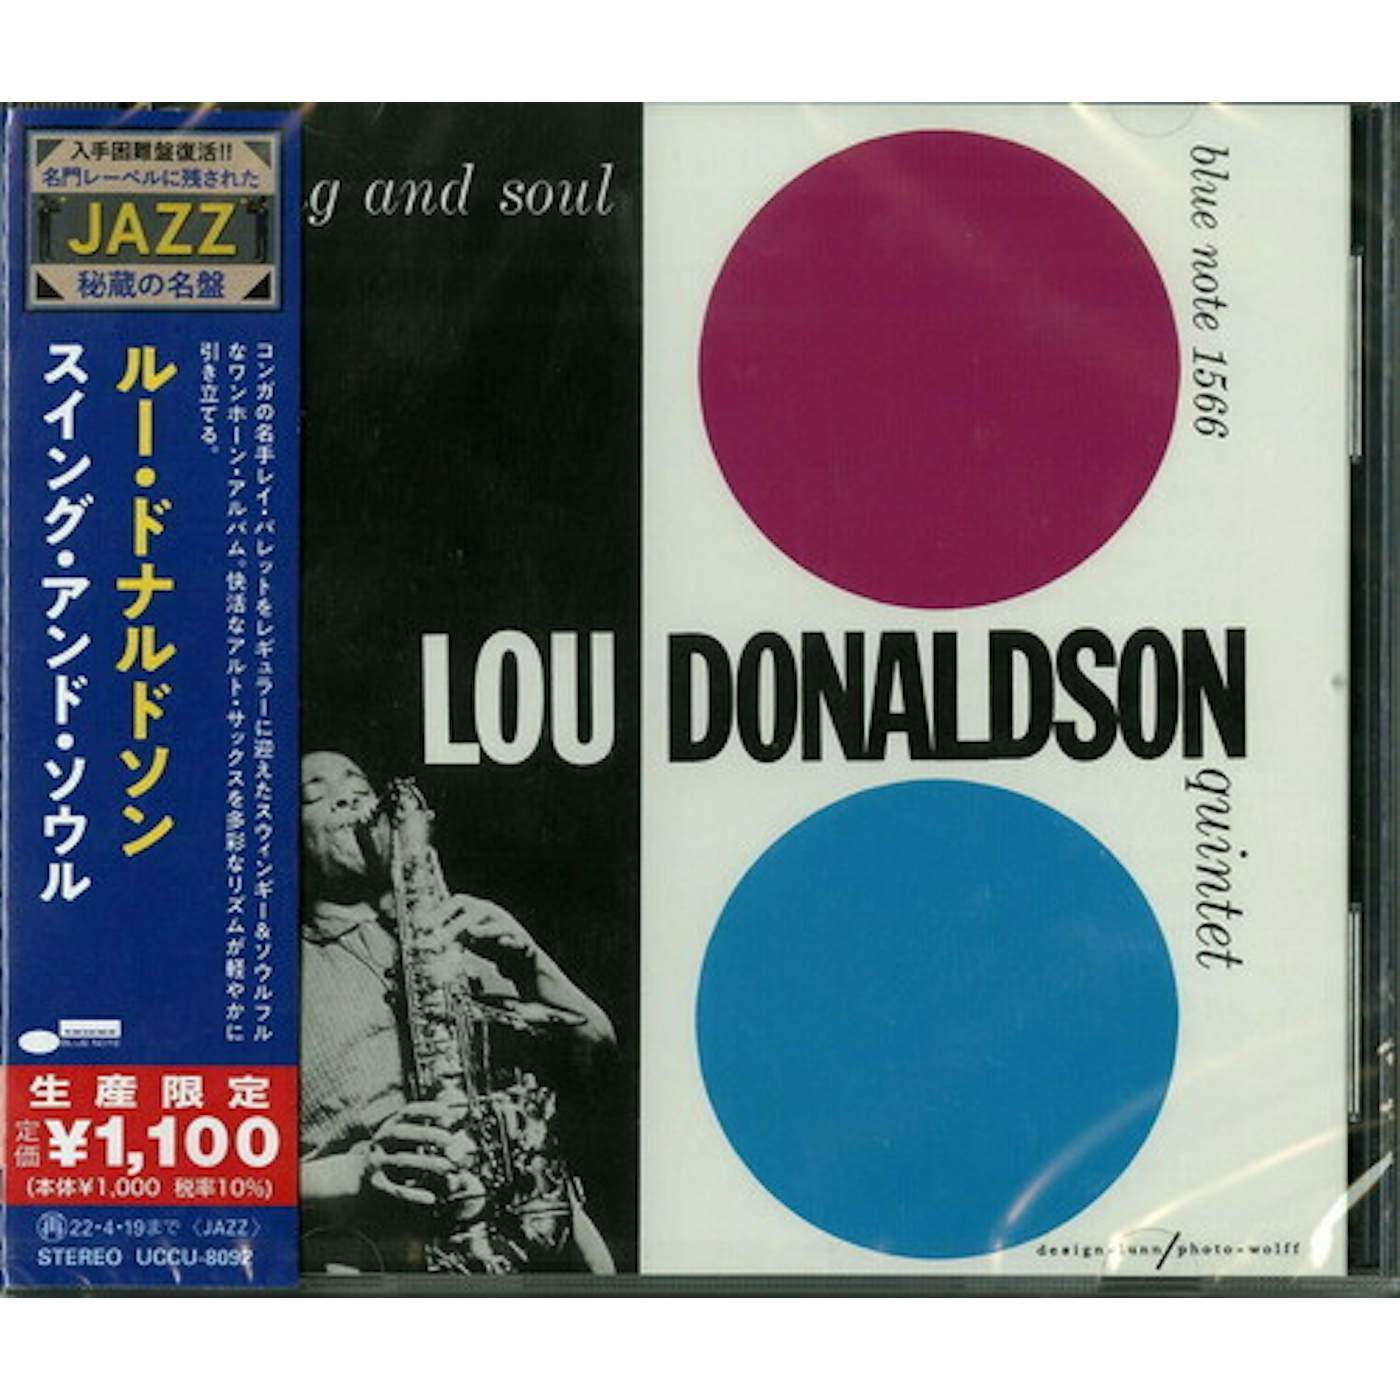 Lou Donaldson SWING & SOUL CD